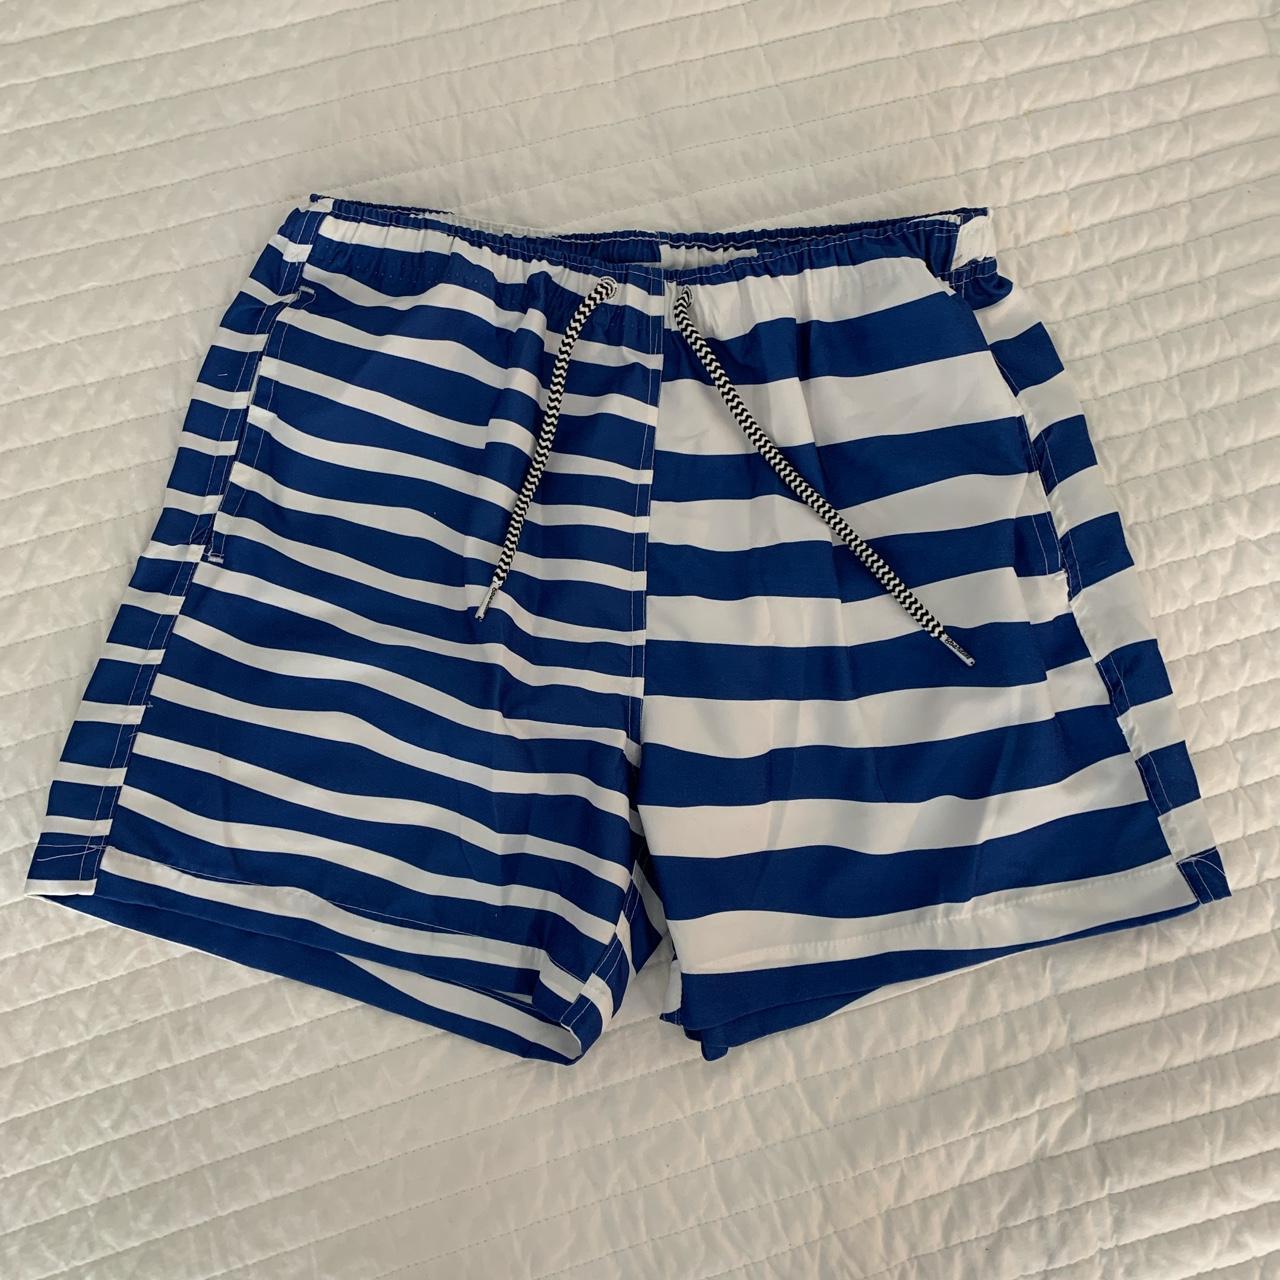 Men's Blue and White Swim-briefs-shorts